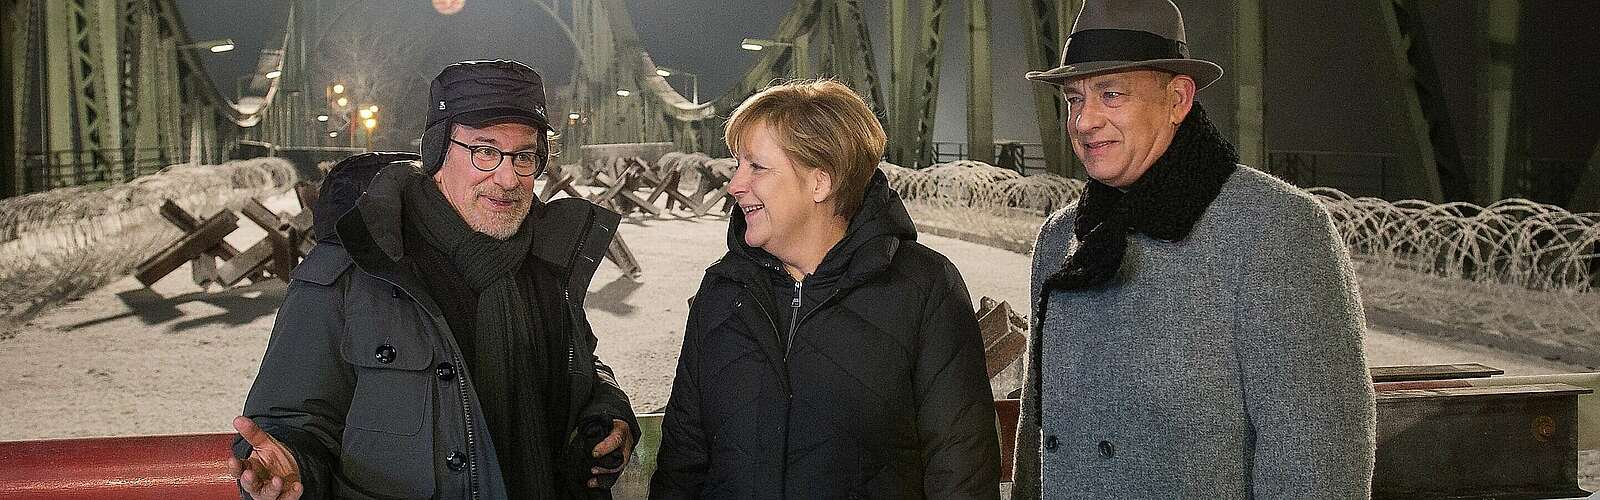 Angela Merkel besucht Spielberg und Tom Hanks beim Dreh,
        
    

        Foto: Bundesregierung/Berg/Kein Urheber bekannt